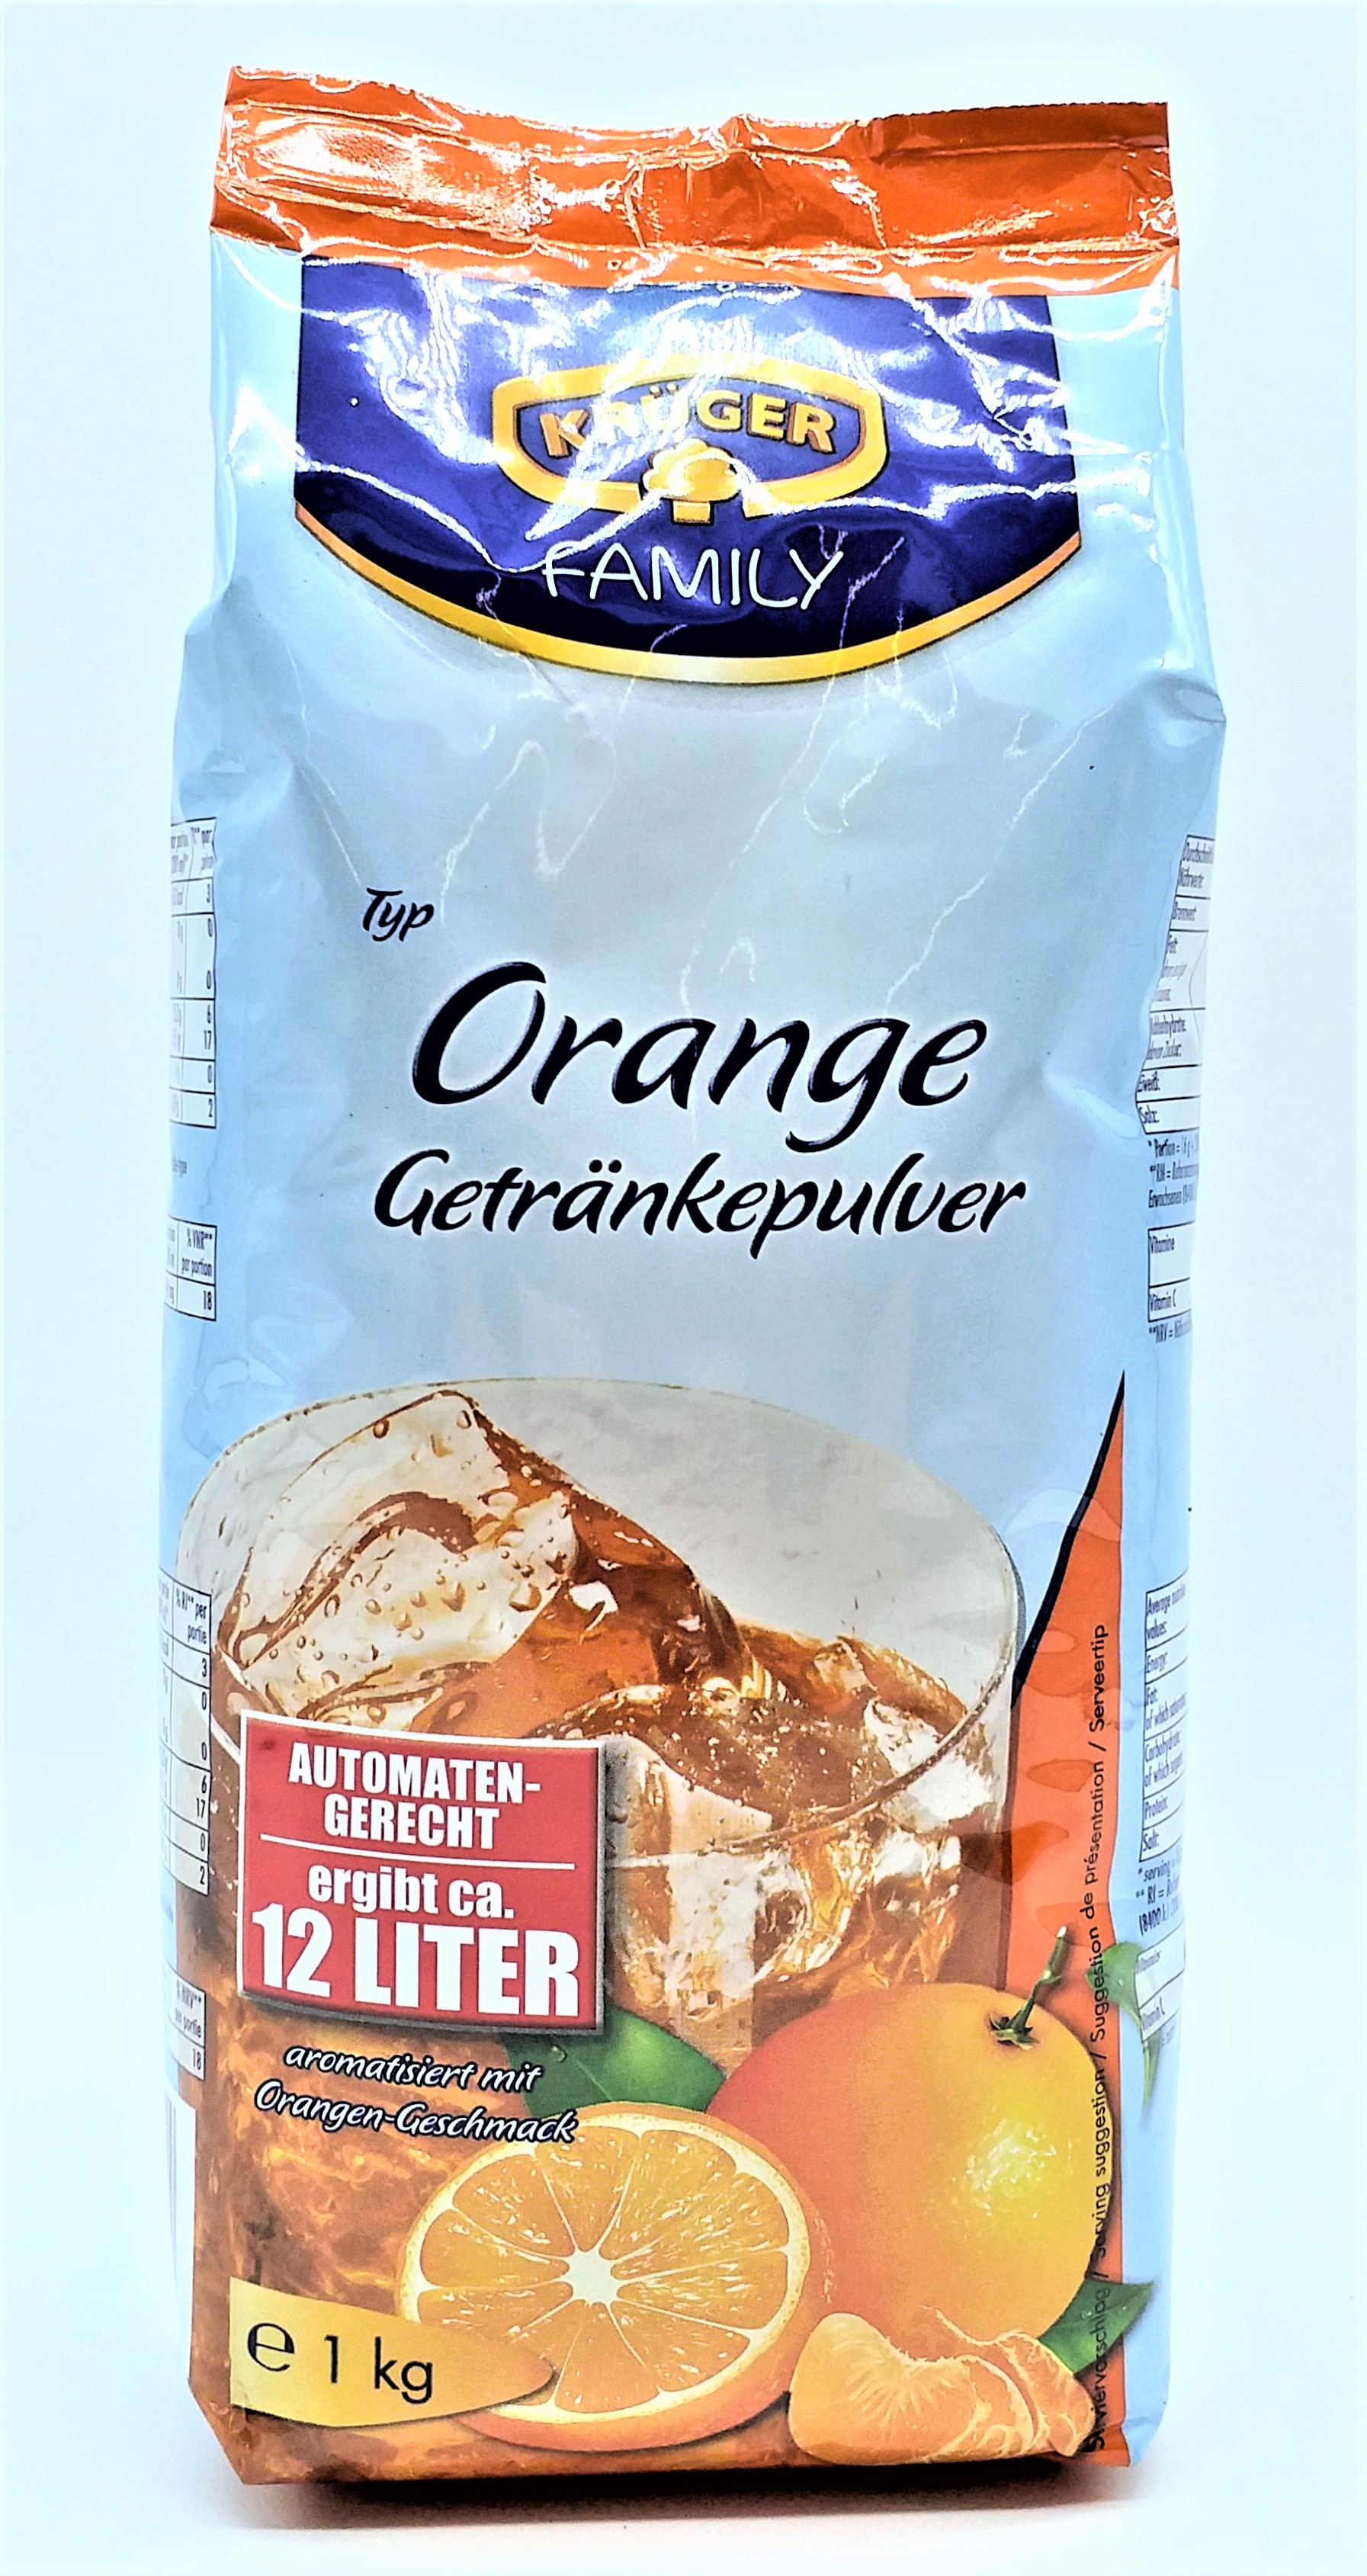 Krüger Orange Getränkepulver 1kg